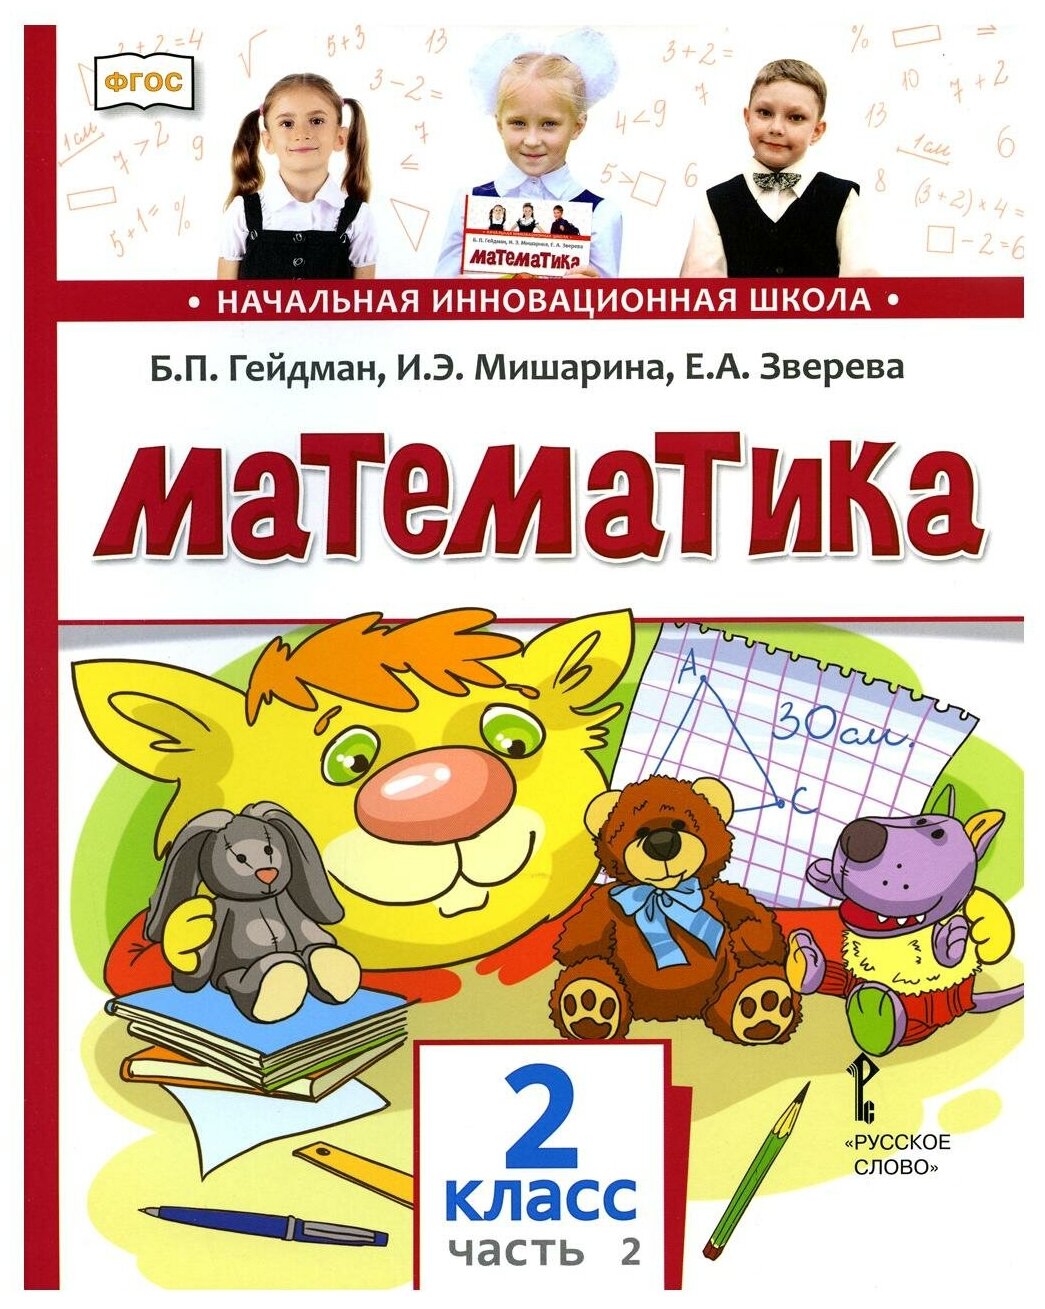 Математика: Учебник для 2 класса общеобразовательных организаций. В 2 ч. Ч. 2. 2-е полугодие. 4-е изд